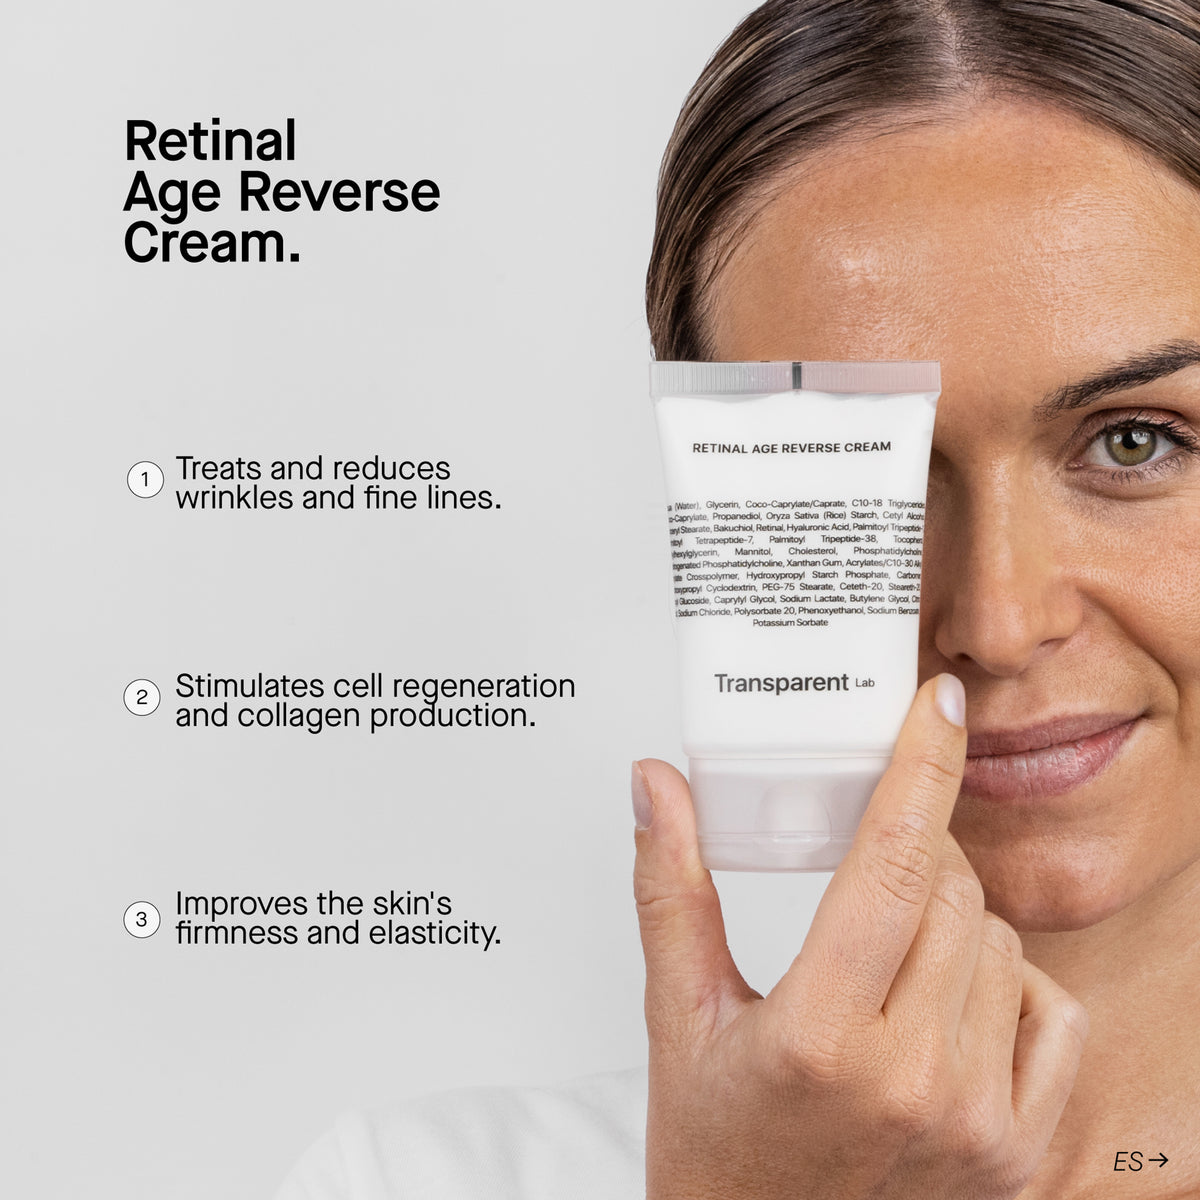 Transparent Lab | Retinal Age Reverse Cream